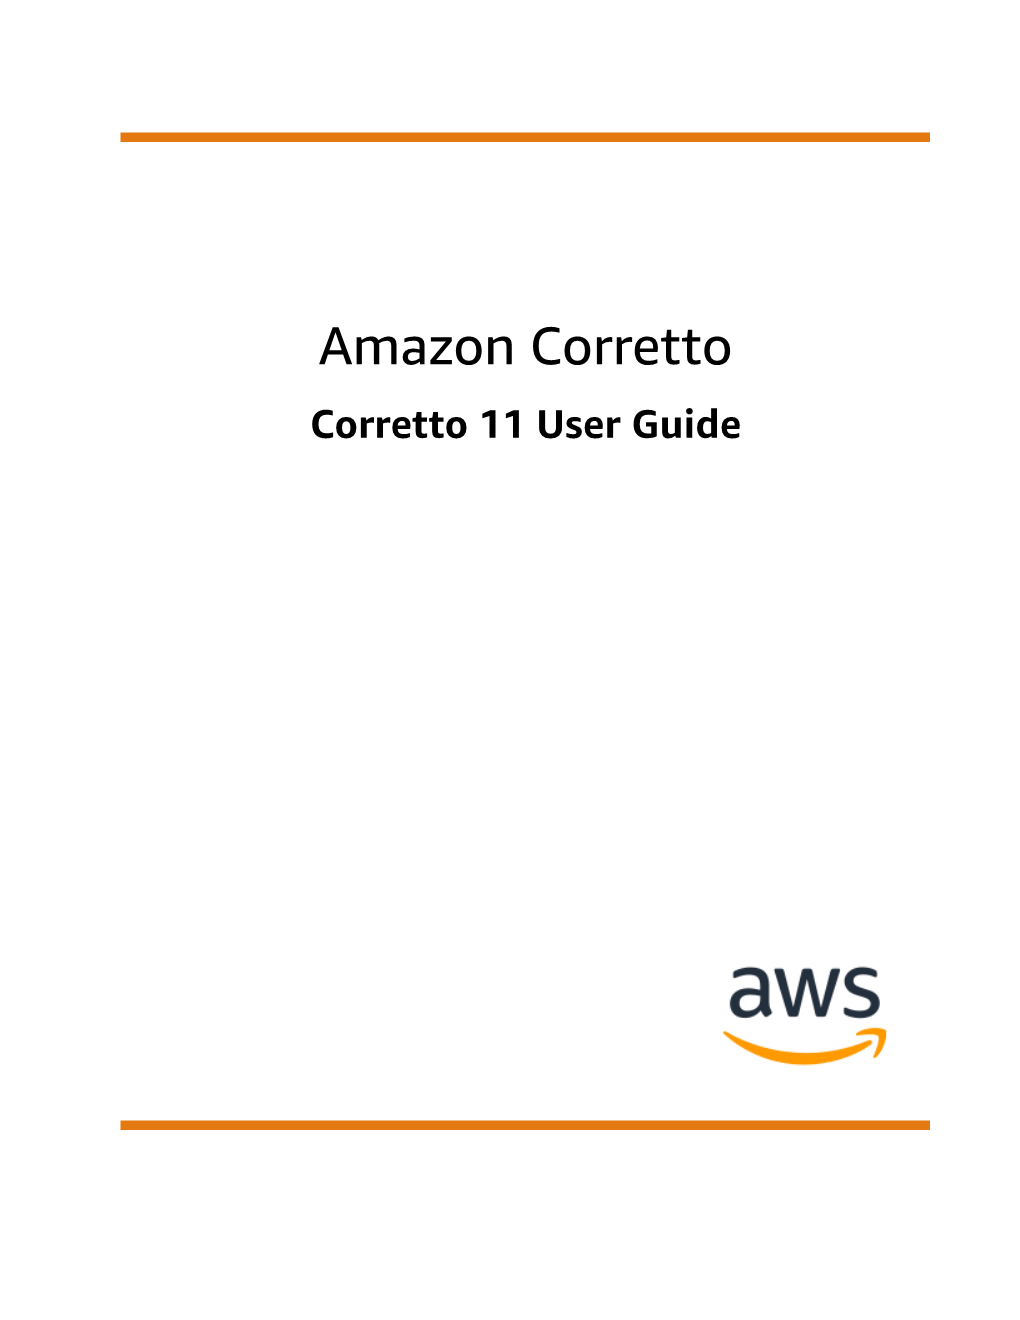 Corretto 11 User Guide Amazon Corretto Corretto 11 User Guide